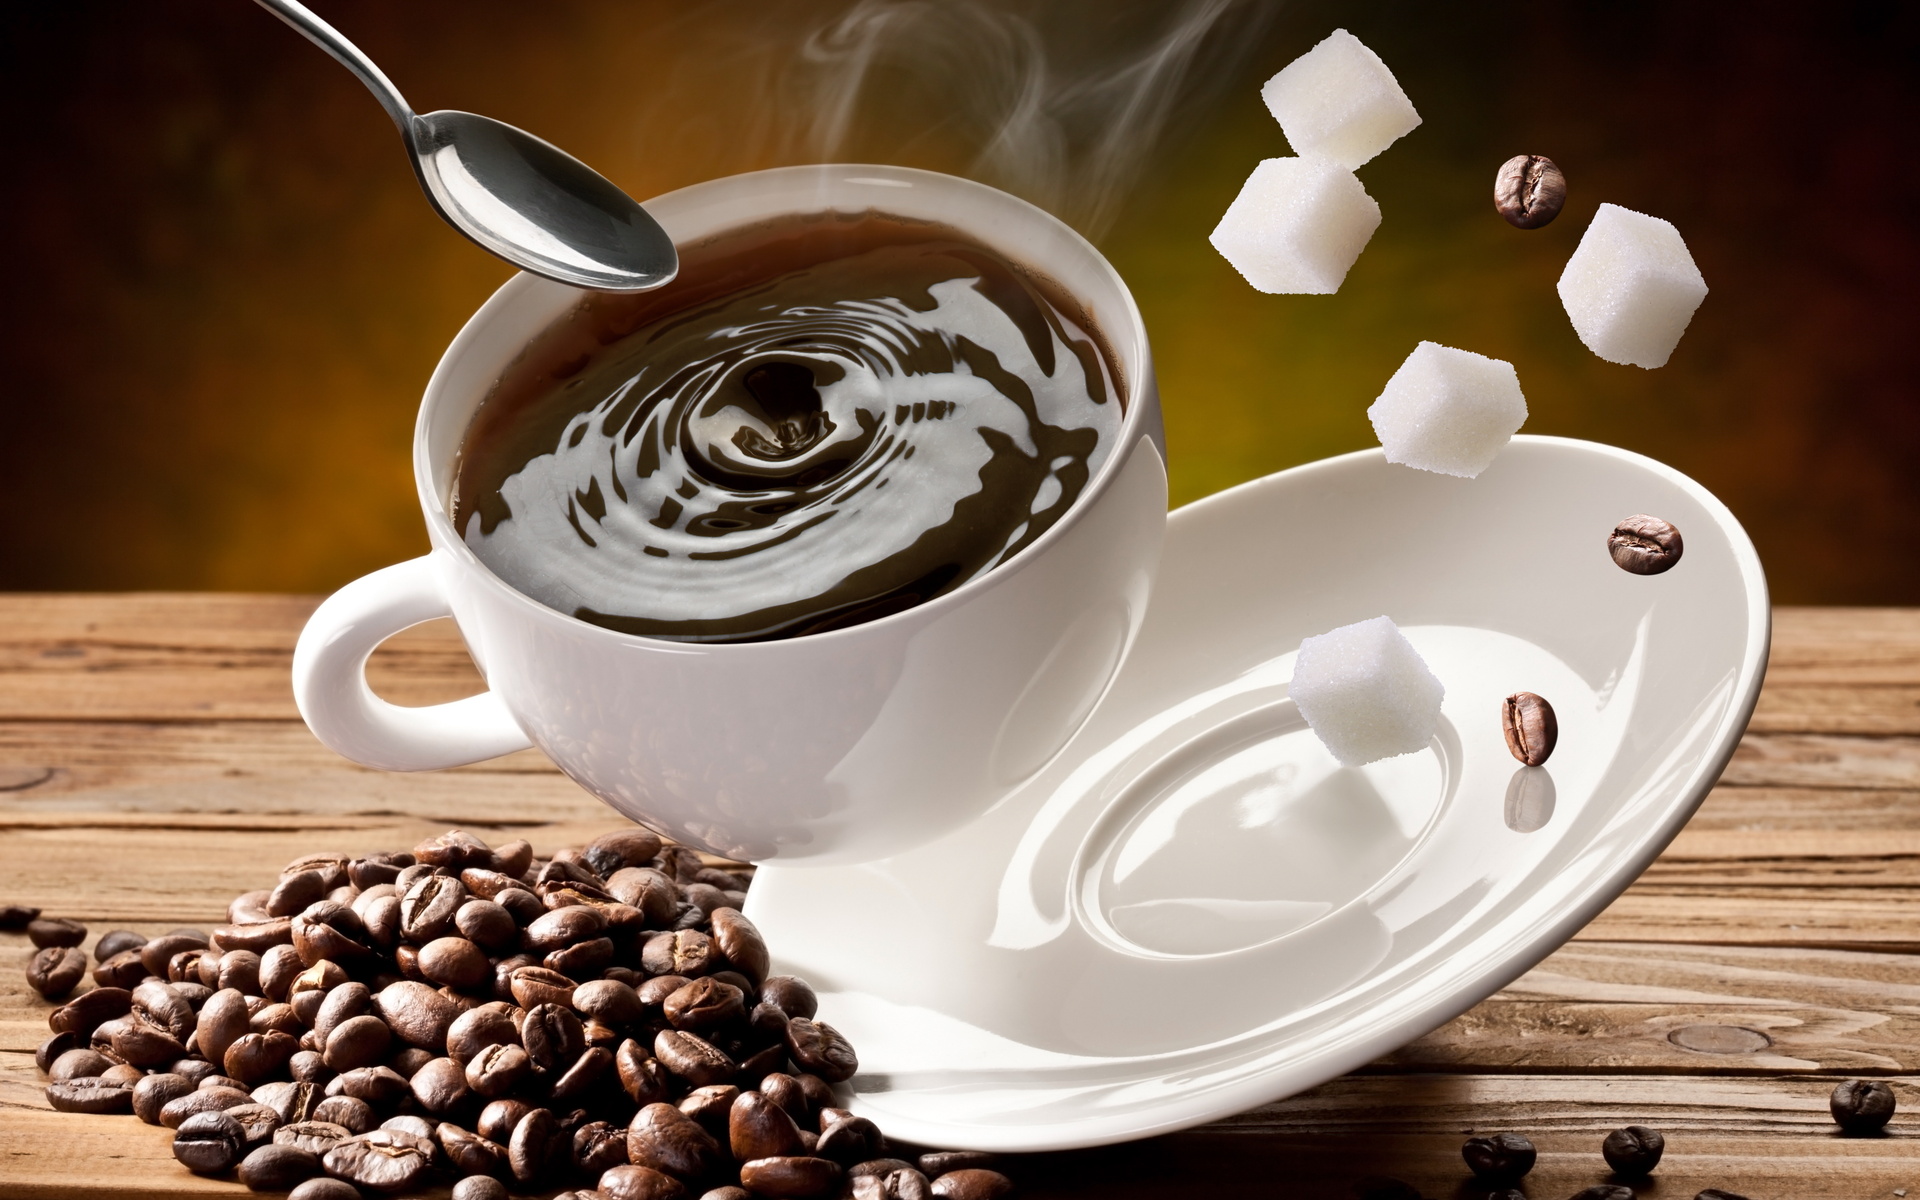 café papier peint,coupe,tasse à café,caféine,coupe,café java